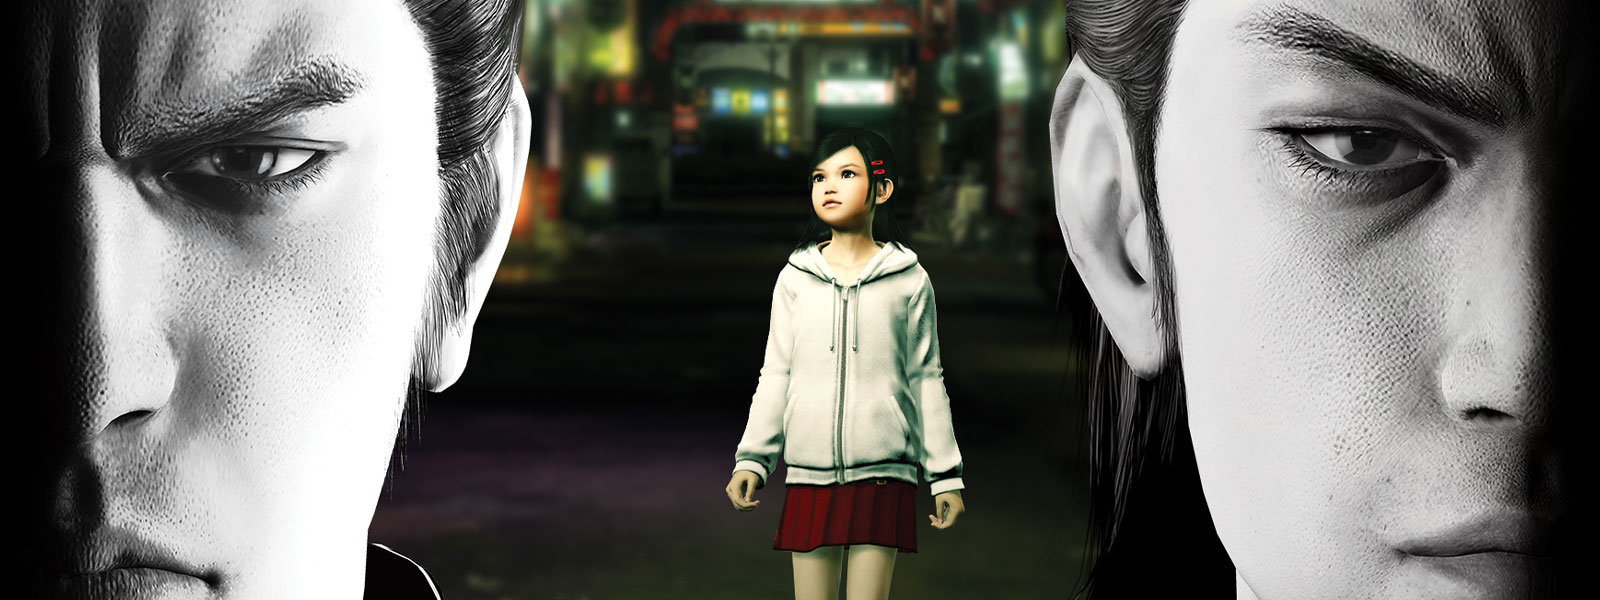 Dois personagens do Yakuza olham de forma sombria para a frente, enquanto uma garotinha está de pé na cidade atrás deles.